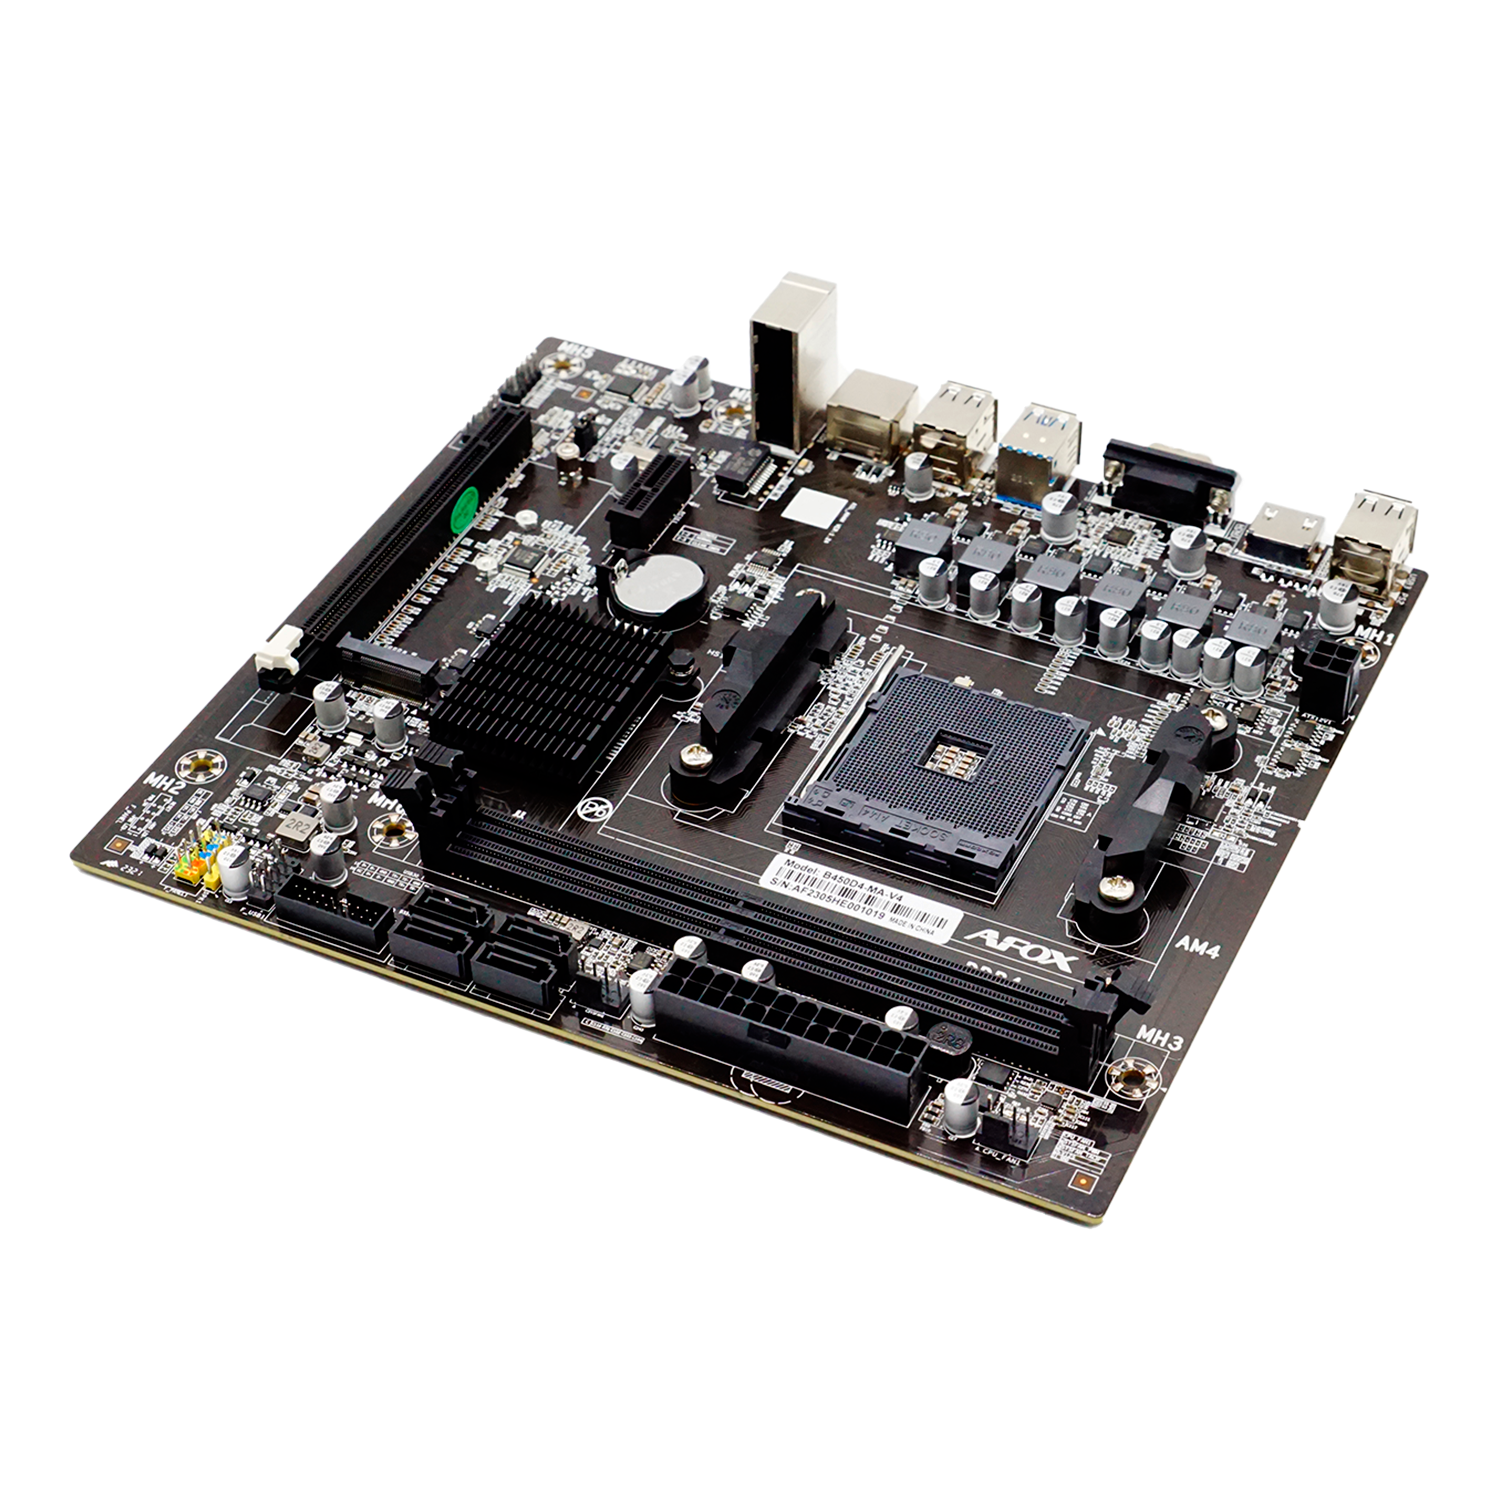 Placa Mãe Afox B450D4-MA-V4 DDR4 Socket AM4 Chipset AMD B450 Micro ATX